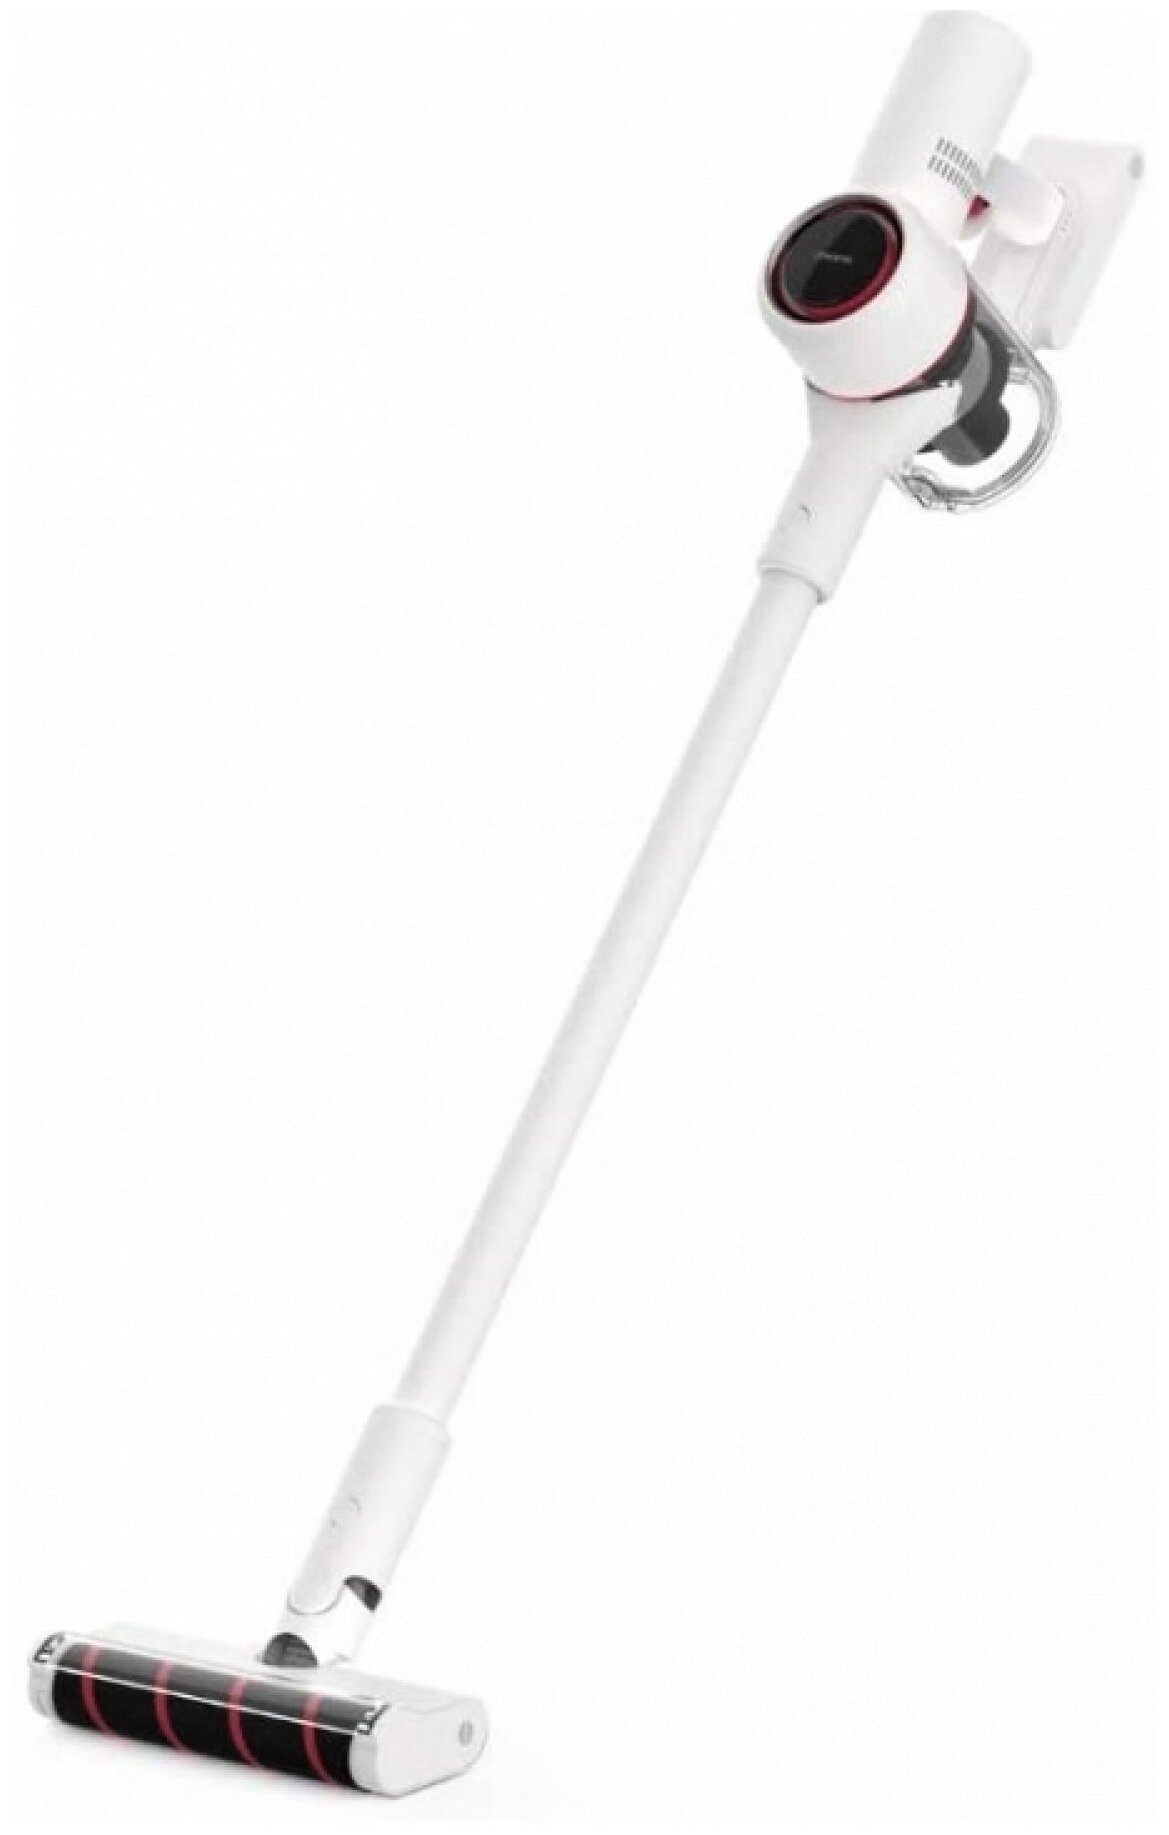 Пылесос вертикальный Dreame Cordless Vacuum Cleaner V10 Plus White (390181)